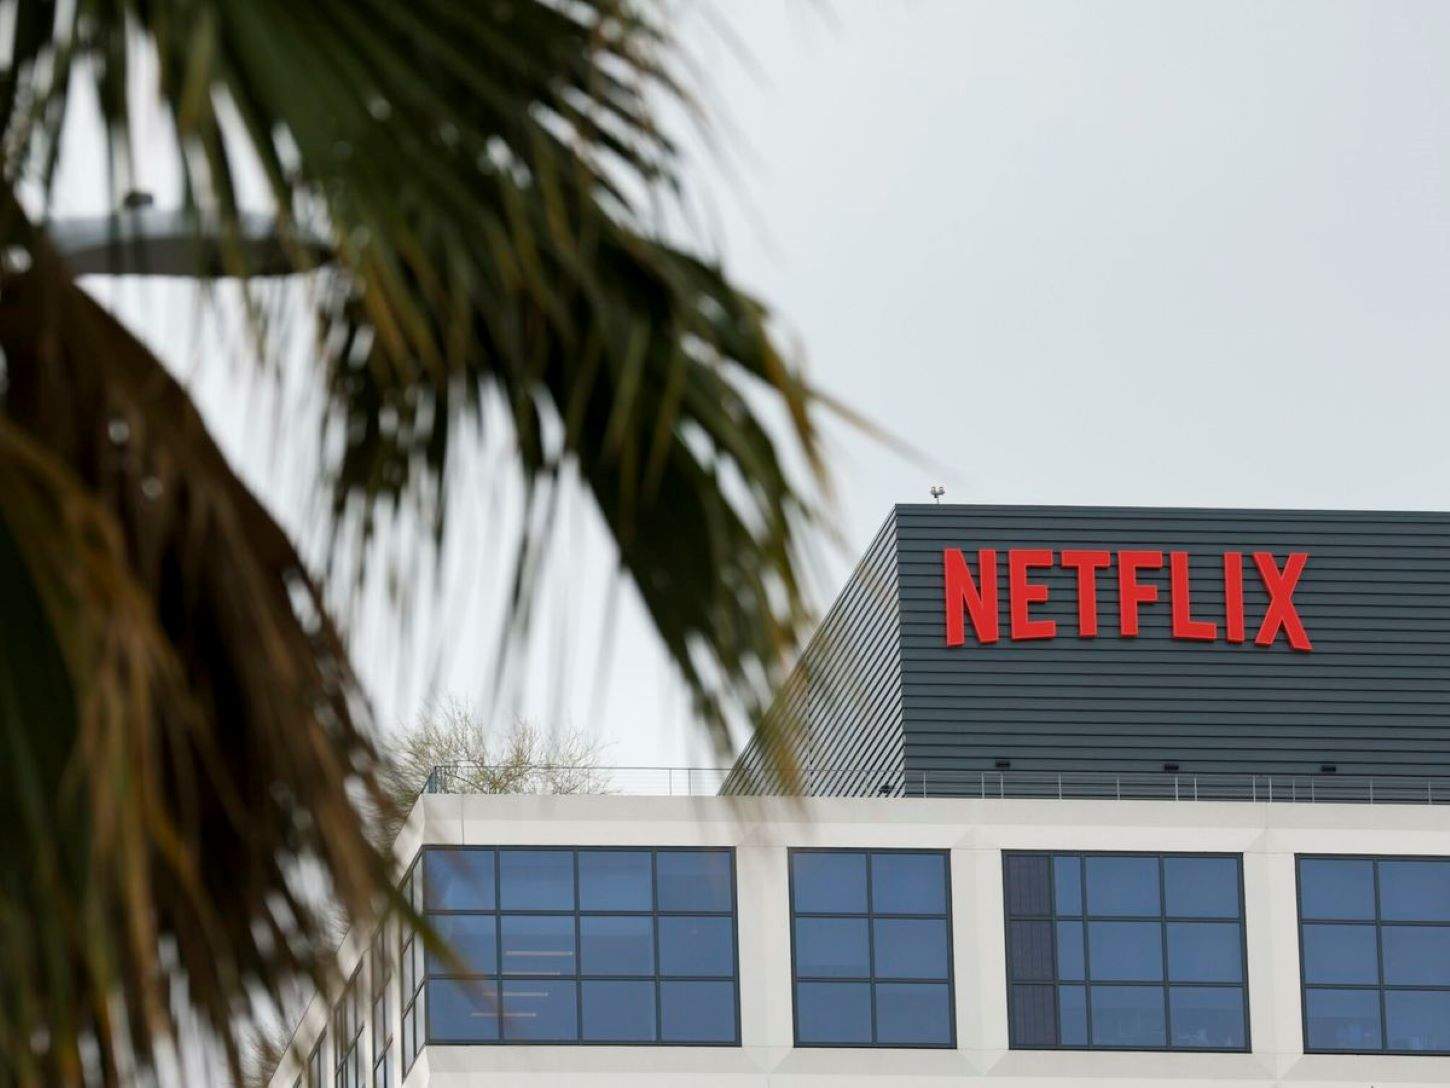 Netflix registra un benefici net de 1.970 milions d'euros en el segon trimestre, un 44,2% més